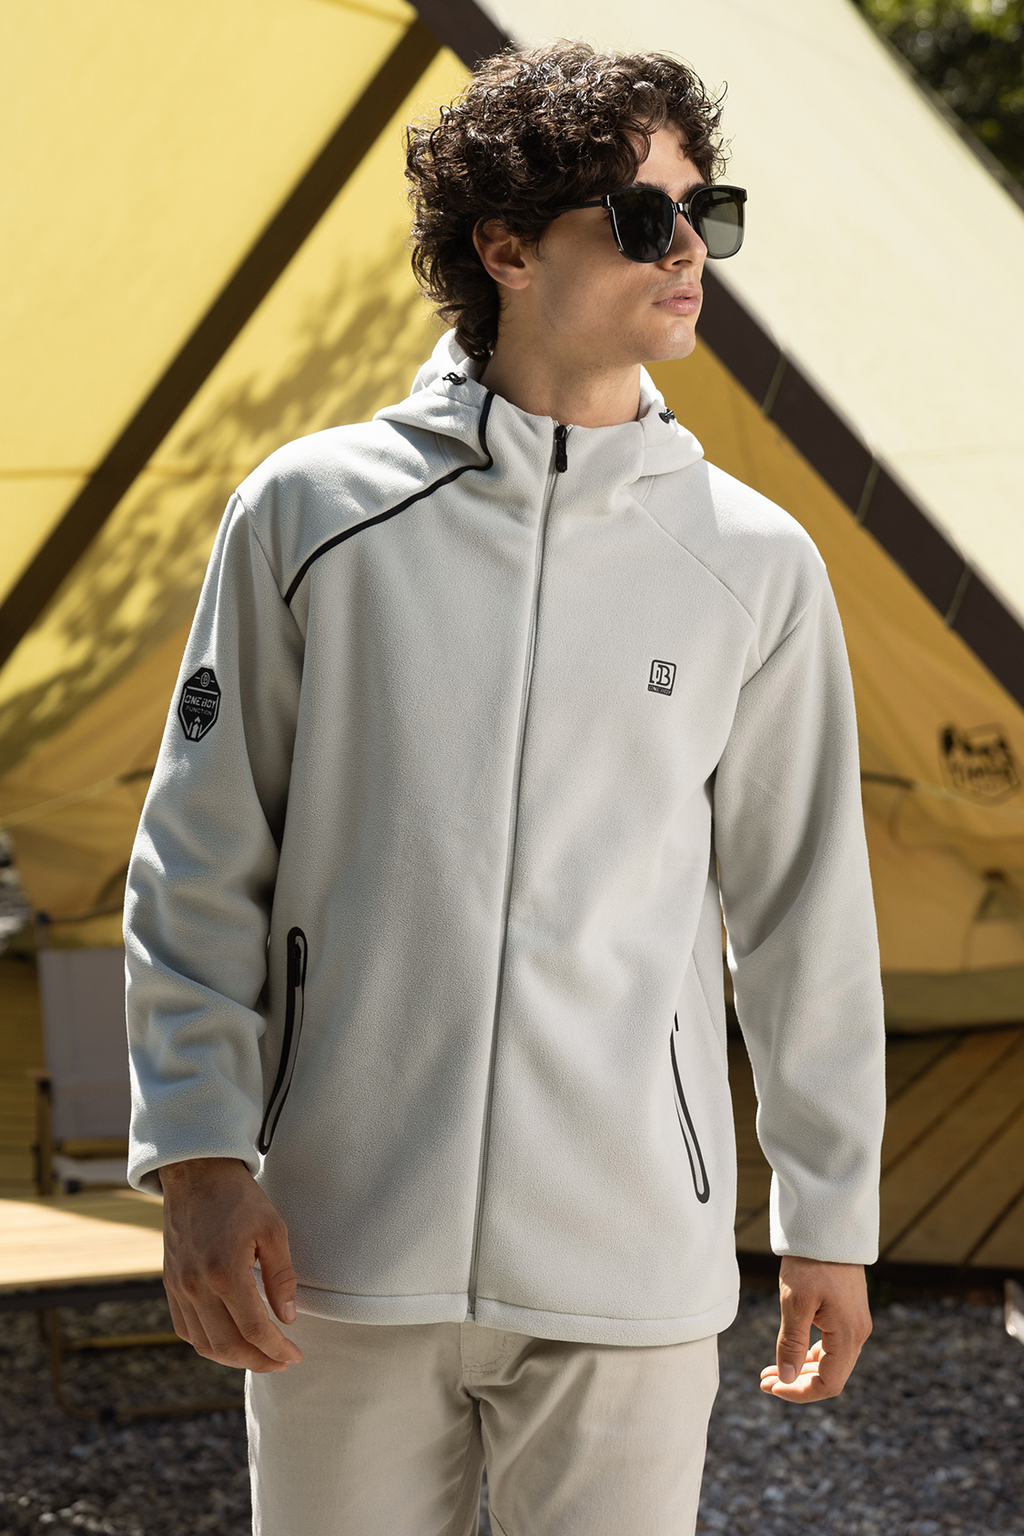 | Jackets Clothing Outdoor Activities Men Interchange Oneboy® 3-in-1 Light Windresist Protective For | Aquaproof